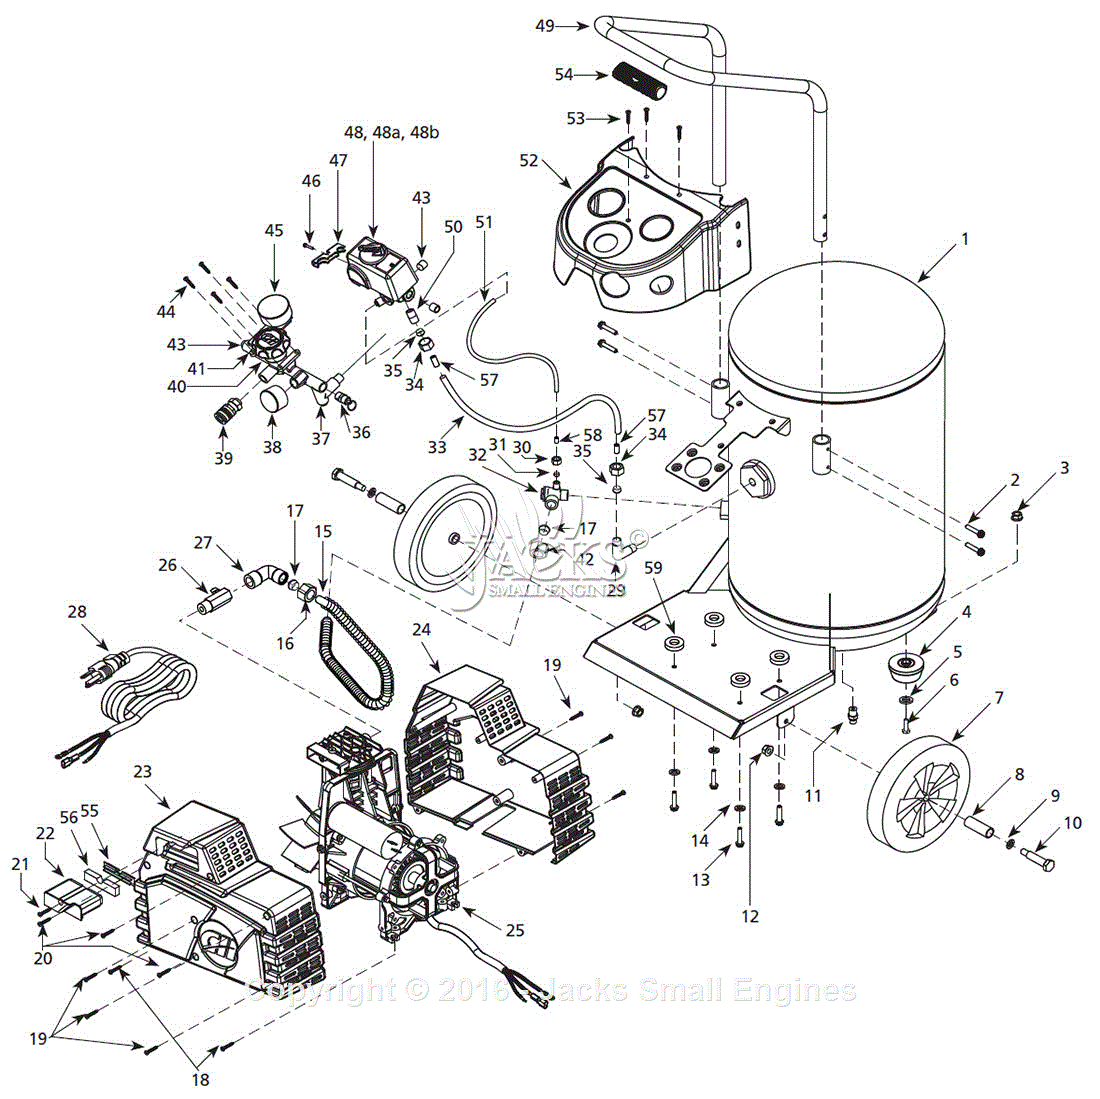 Campbell Hausfeld Air Compressor Parts Diagram Campbell Hausfeld Air Compressor Wiring Diagram Wiring Diagrams Home